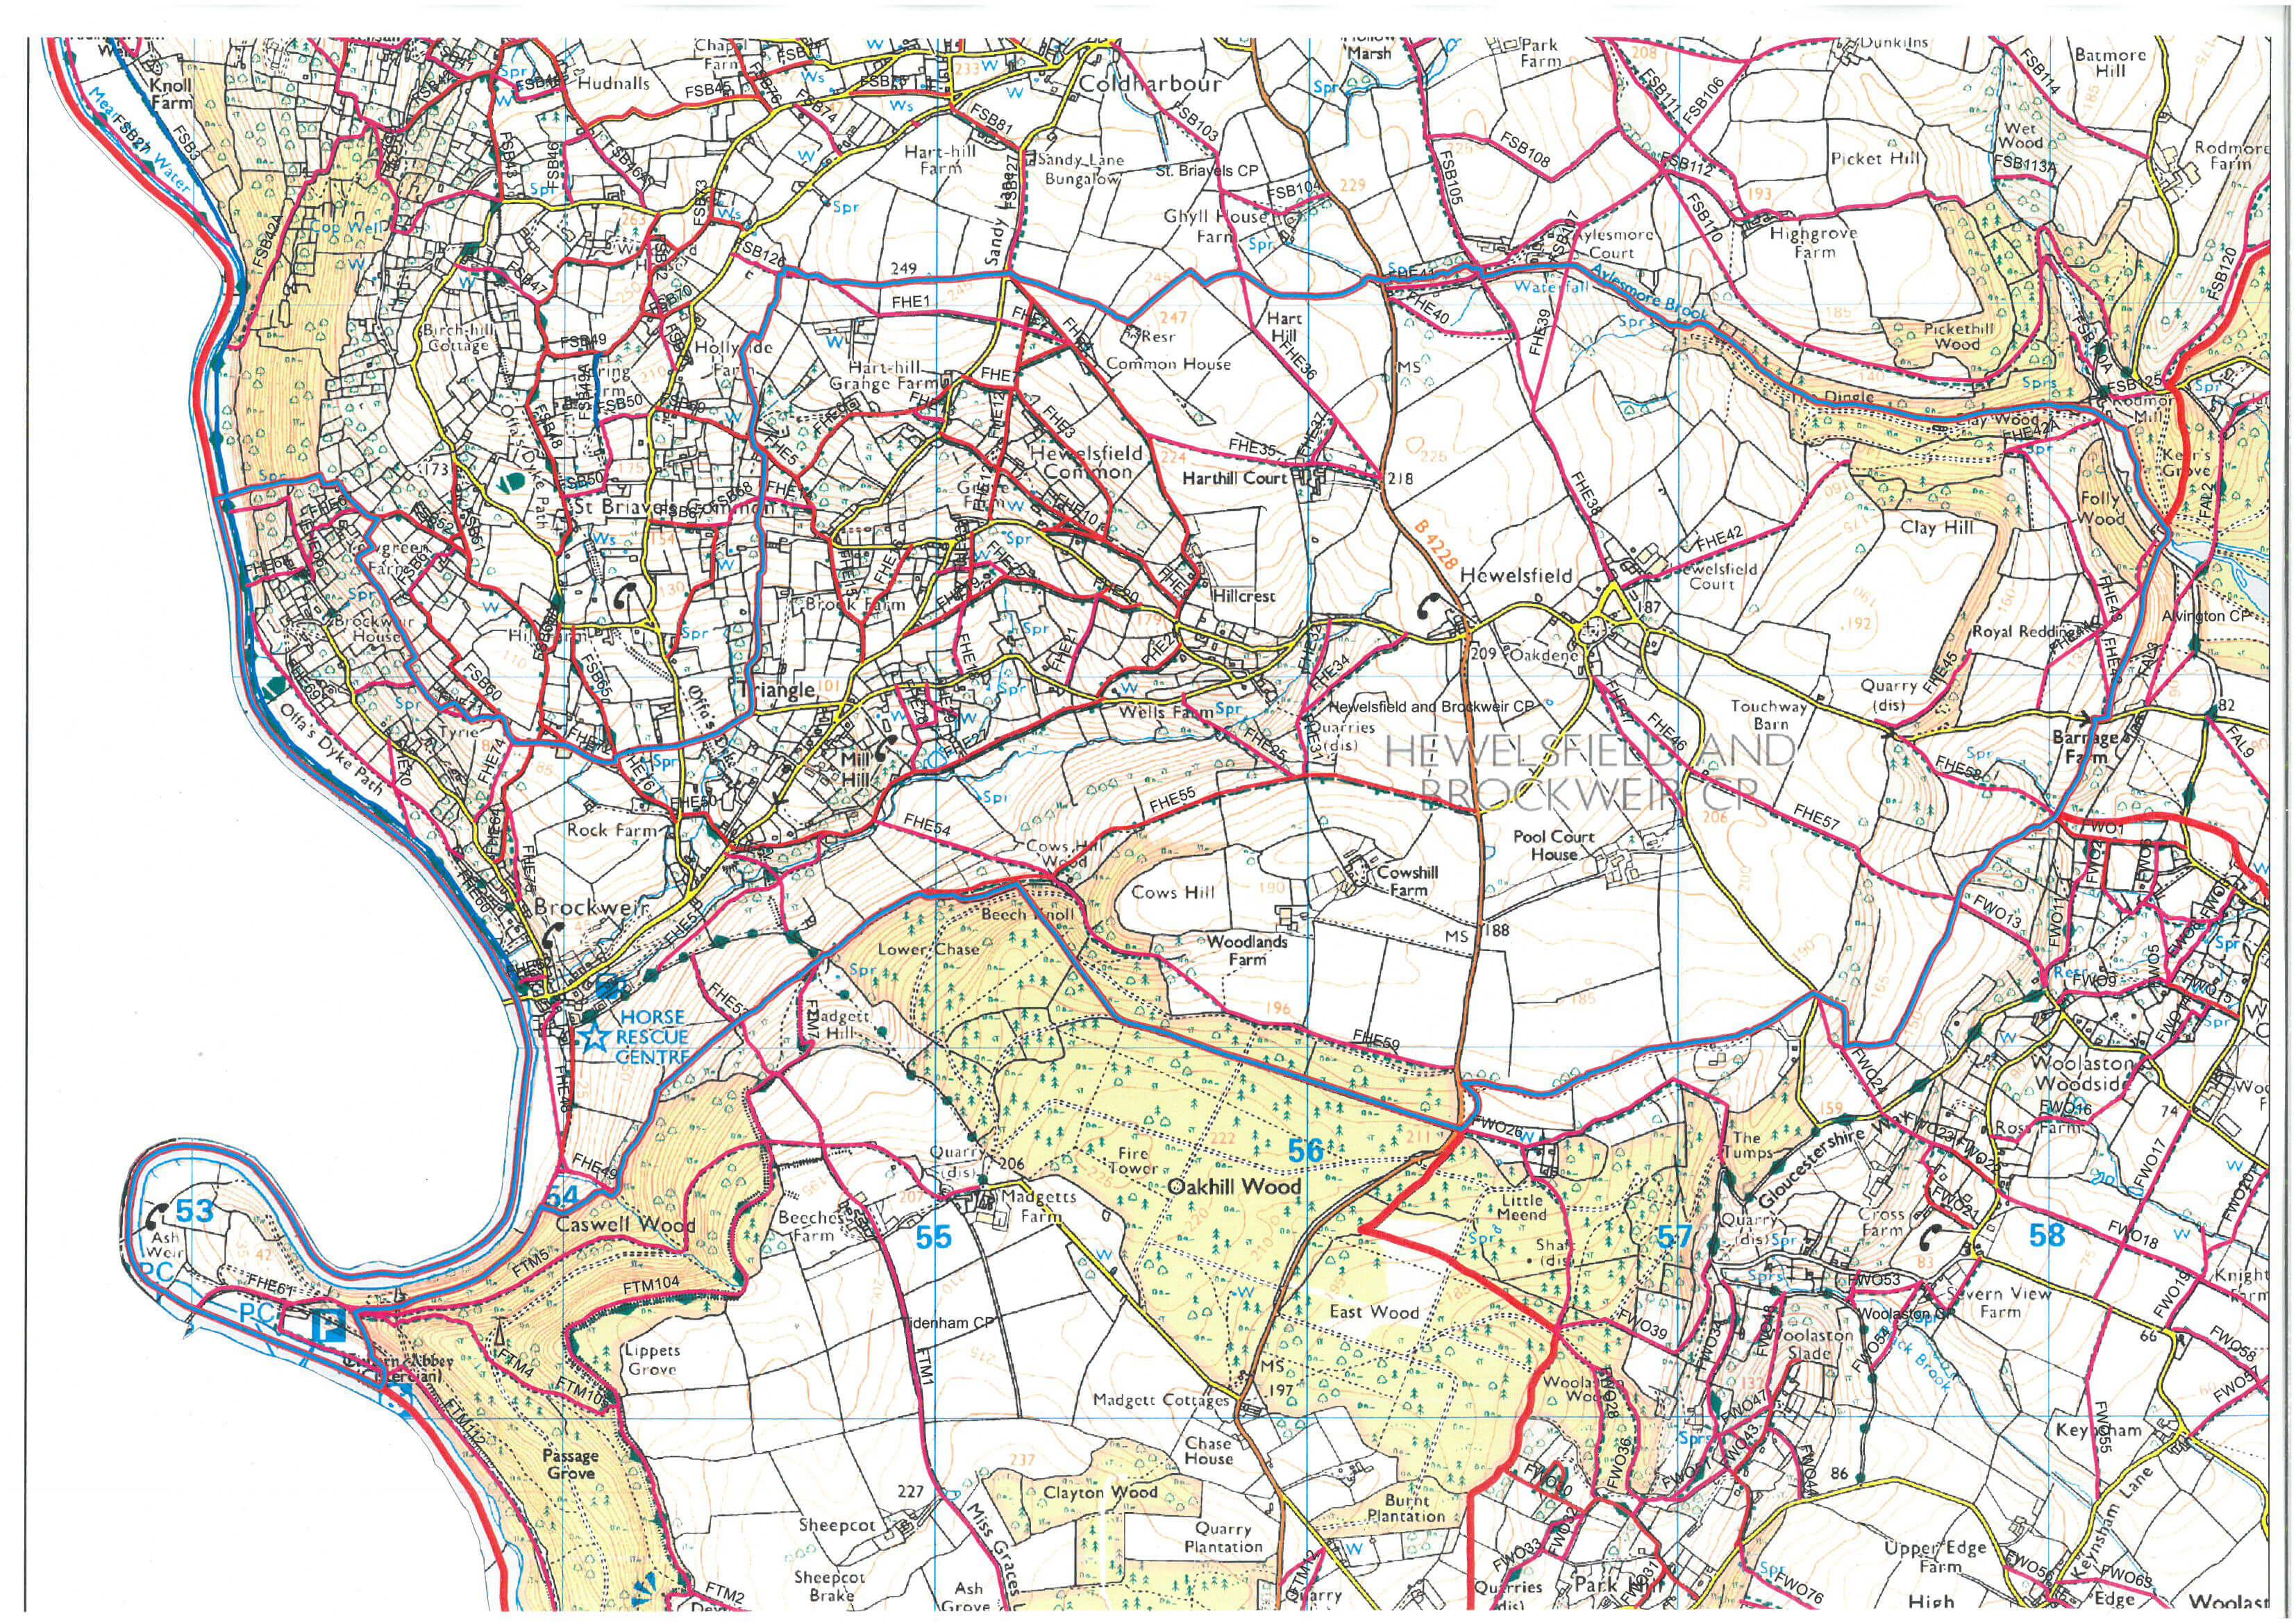 FHE---Hewelsfield--Brockweir---ARC-MAP